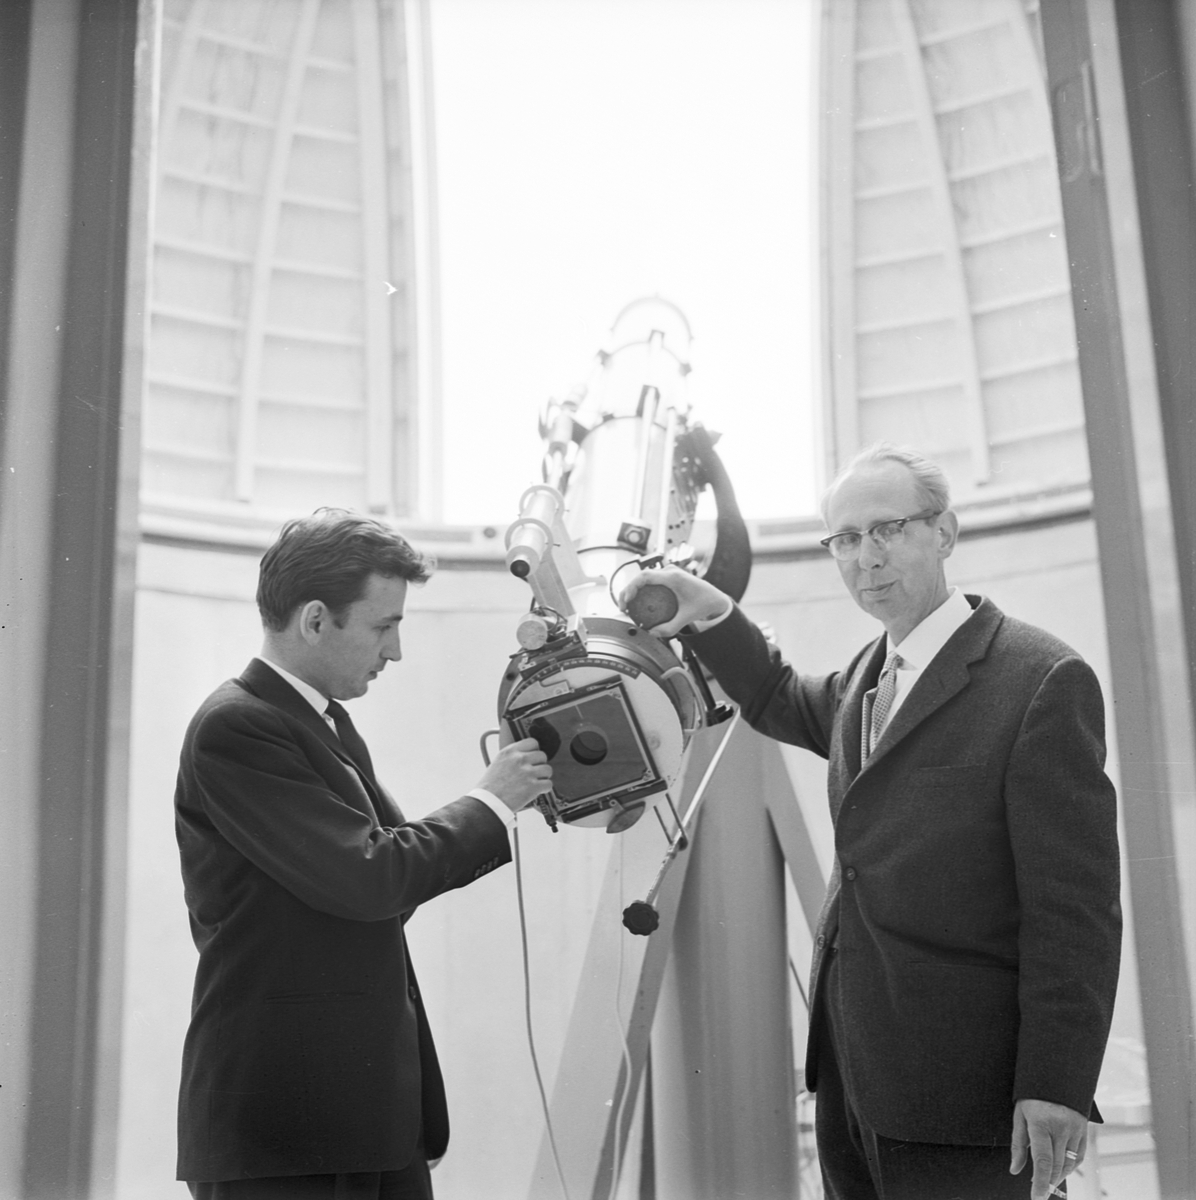 Invigning av Astrogeodetiska observatoriet, Uppsala 1962